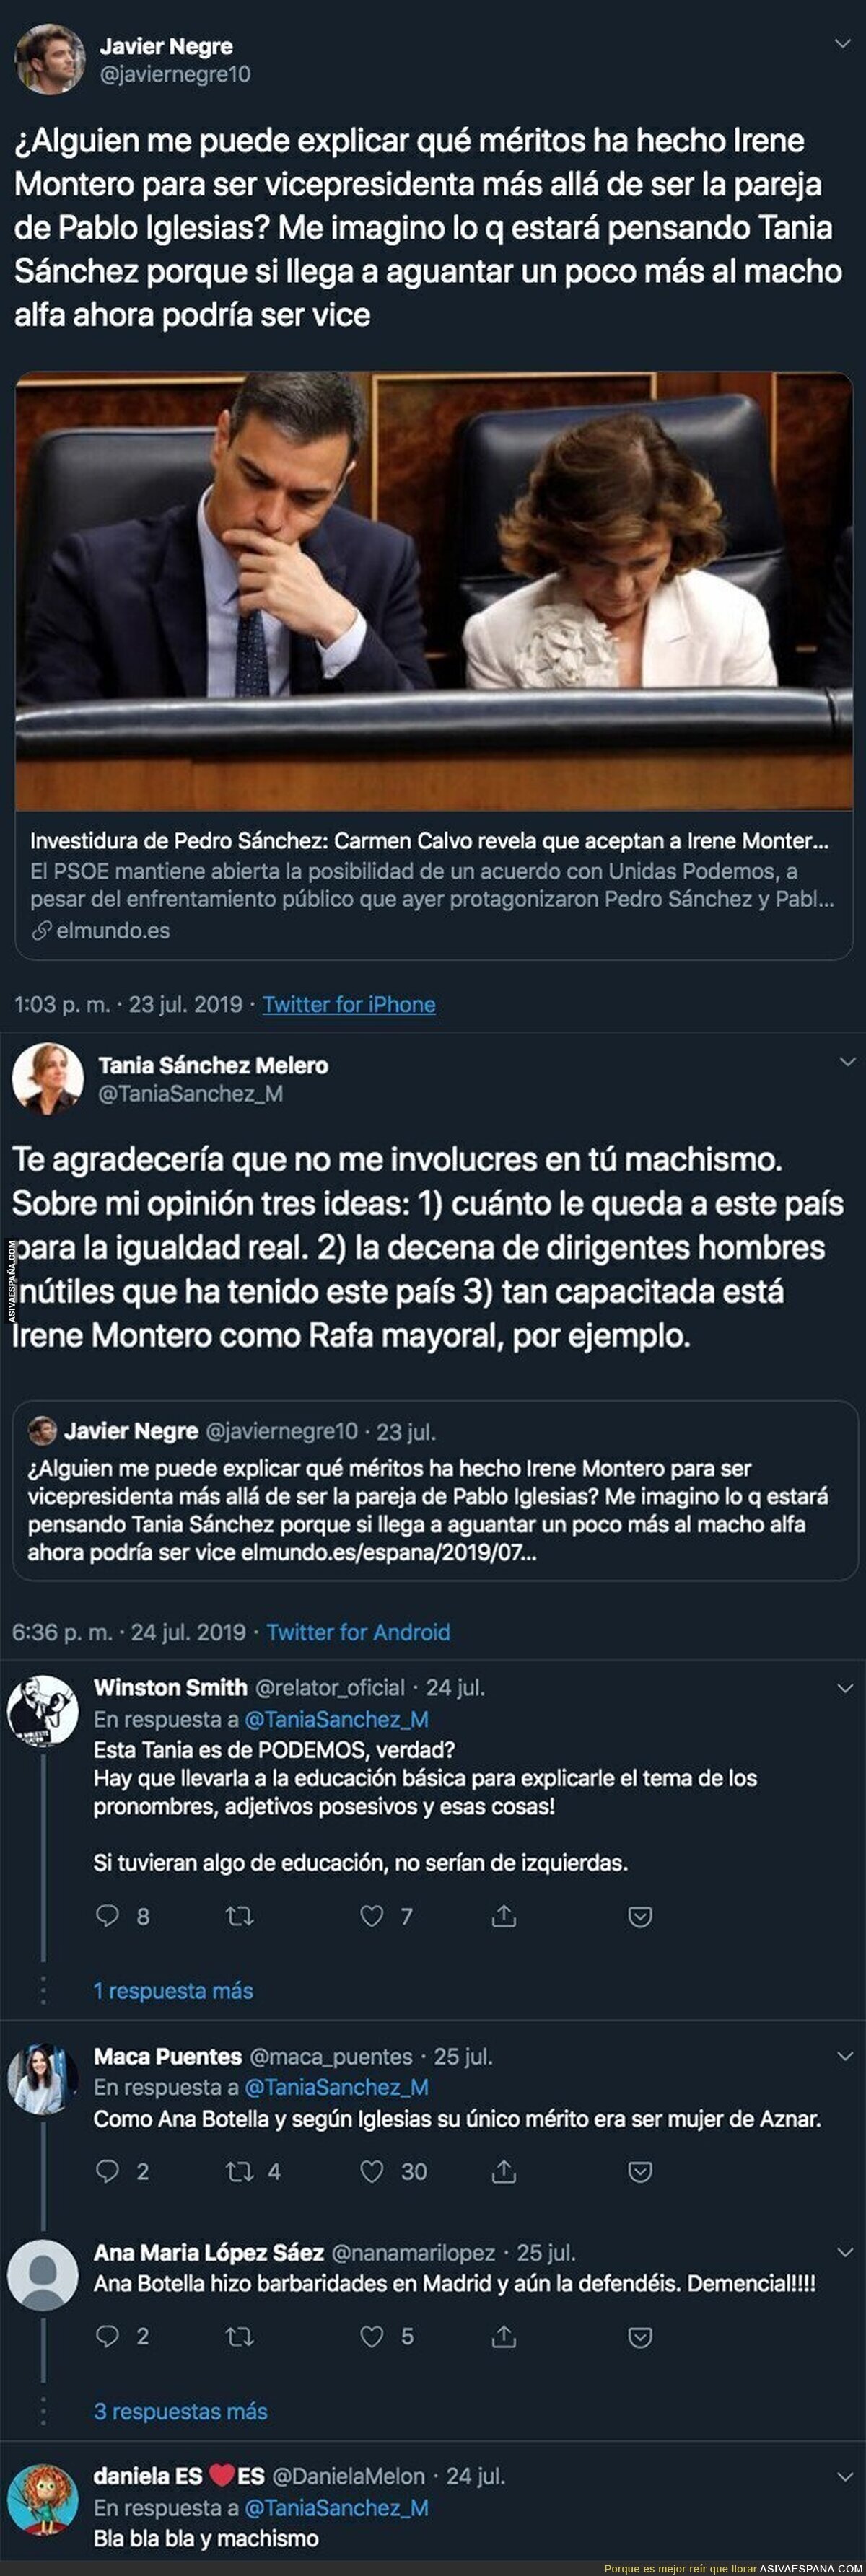 El periodista Javier Negre carga contra Irene Montero al querer ser vicepresidenta y Tania Sánchez le pega un ZASCA monumental